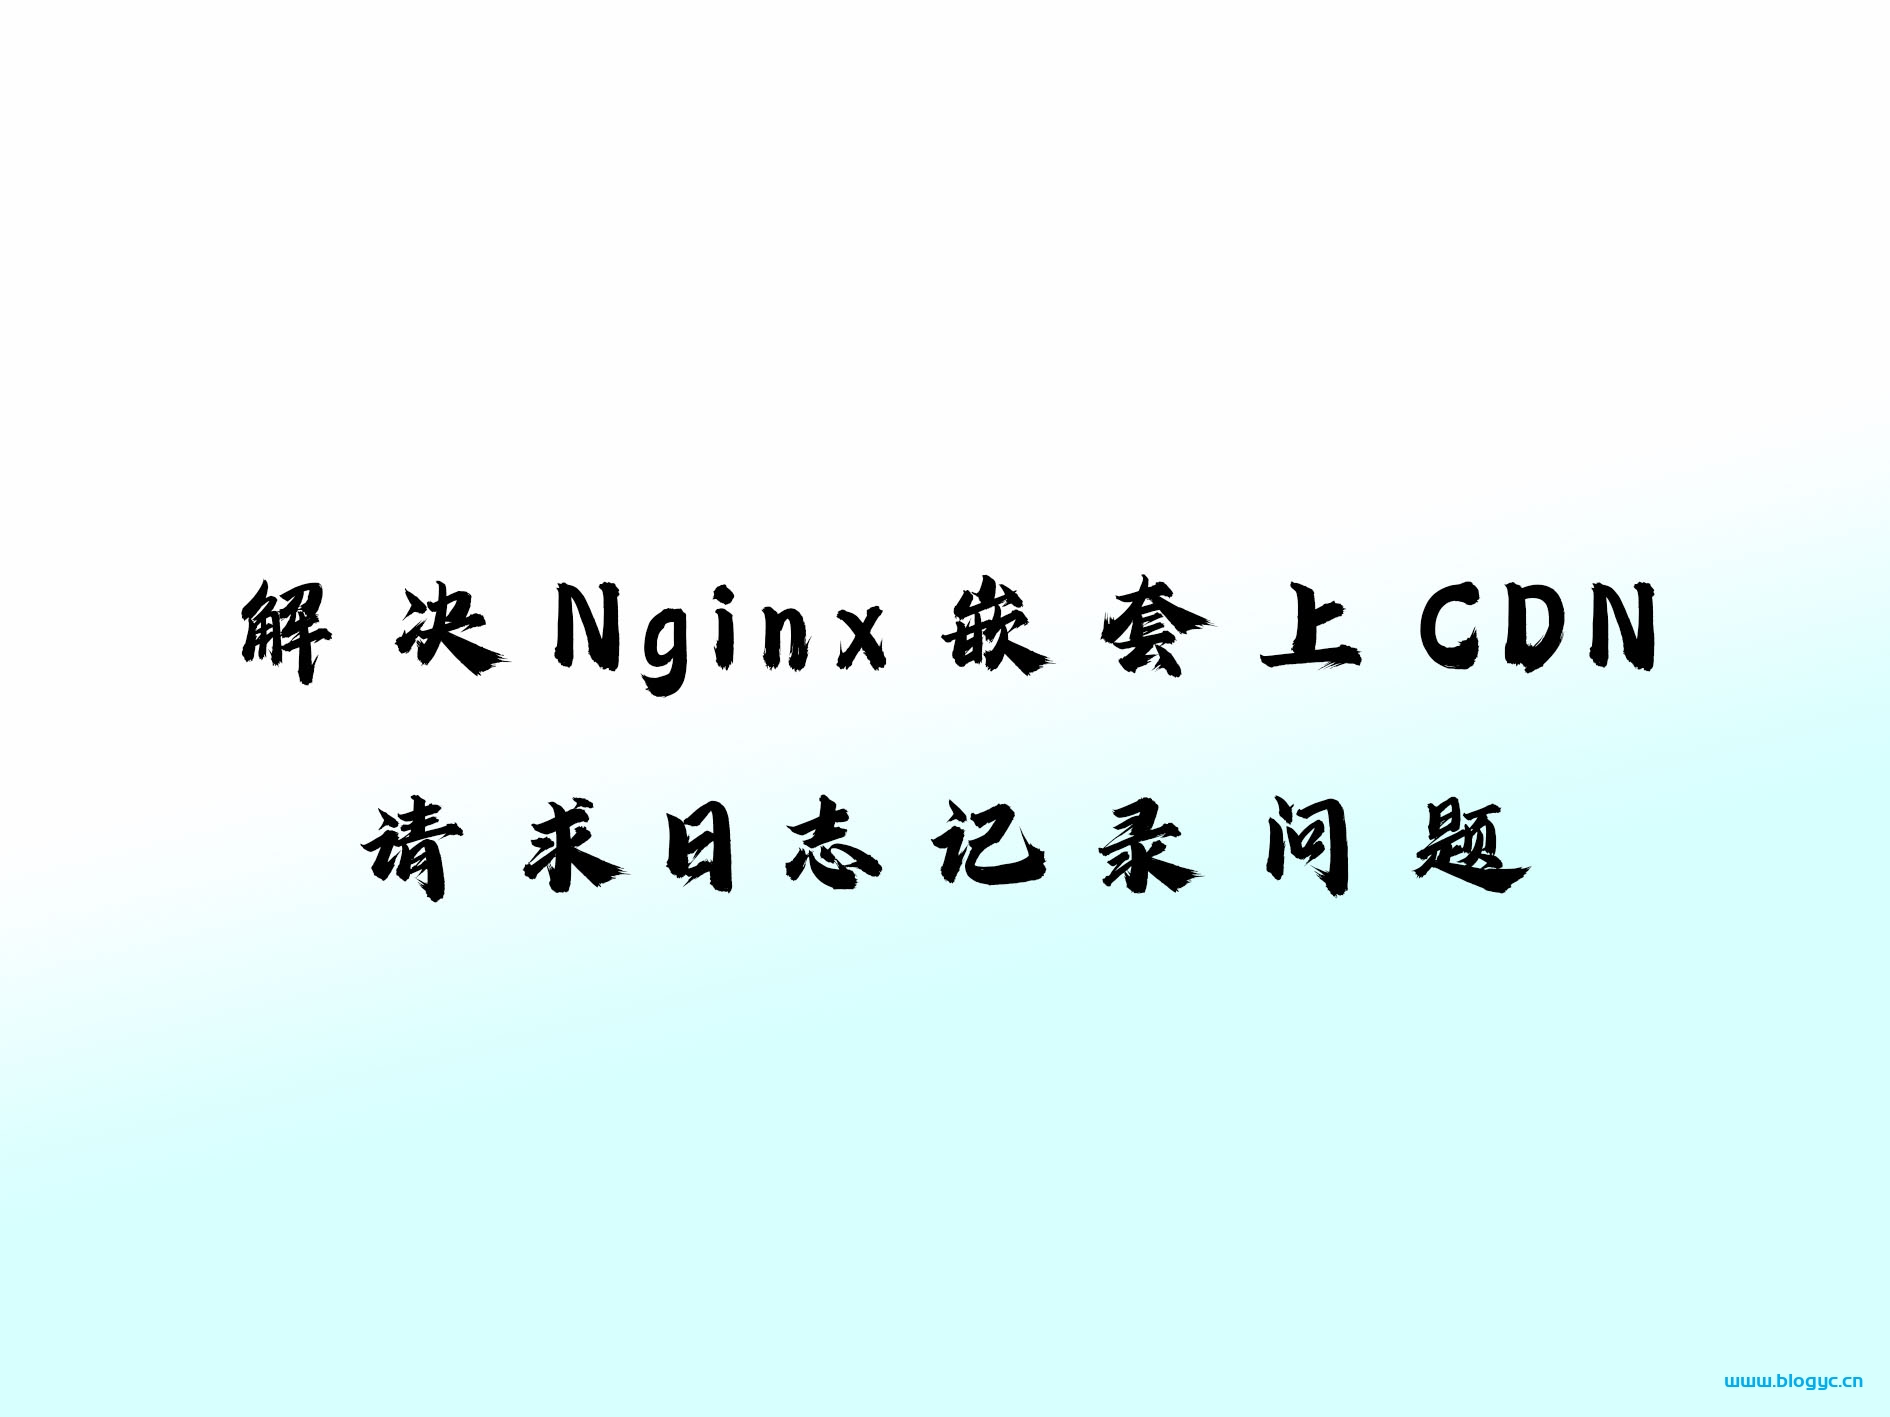 如何解决Nginx嵌套CDN请求时的日志记录问题